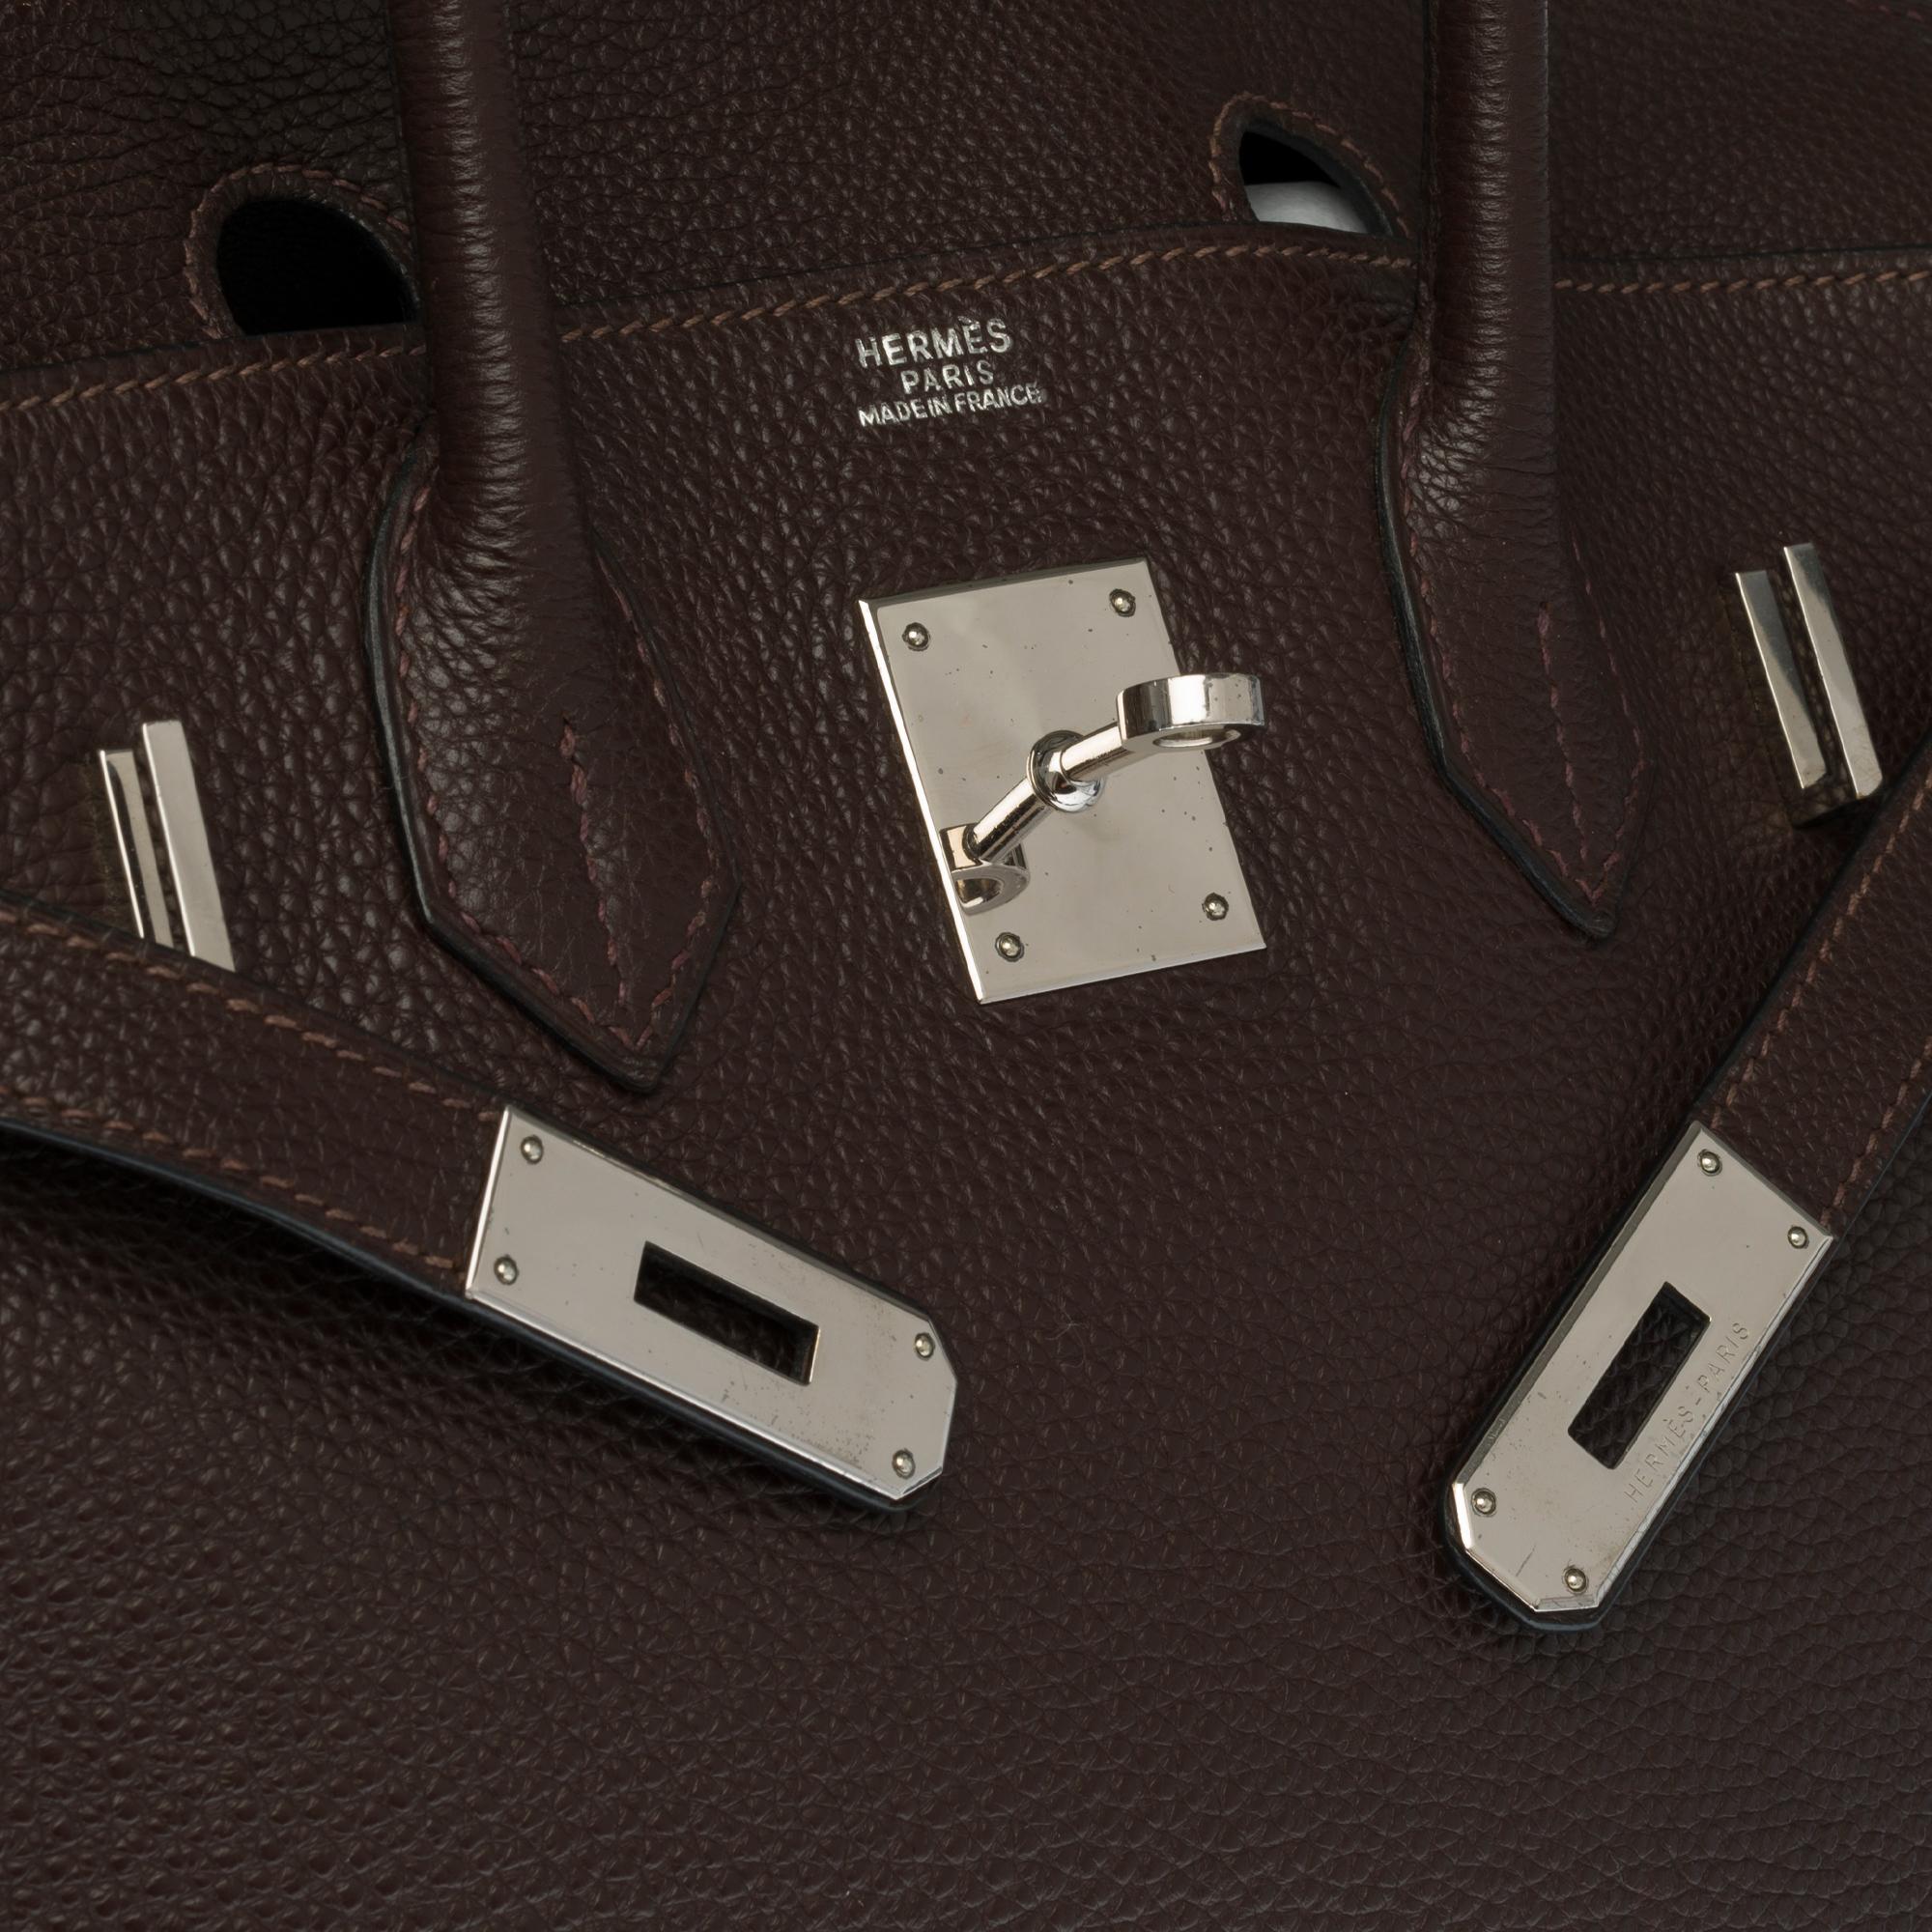 Black Hermès Birkin 30 handbag in Brown Togo leather, silver Palladium hardware